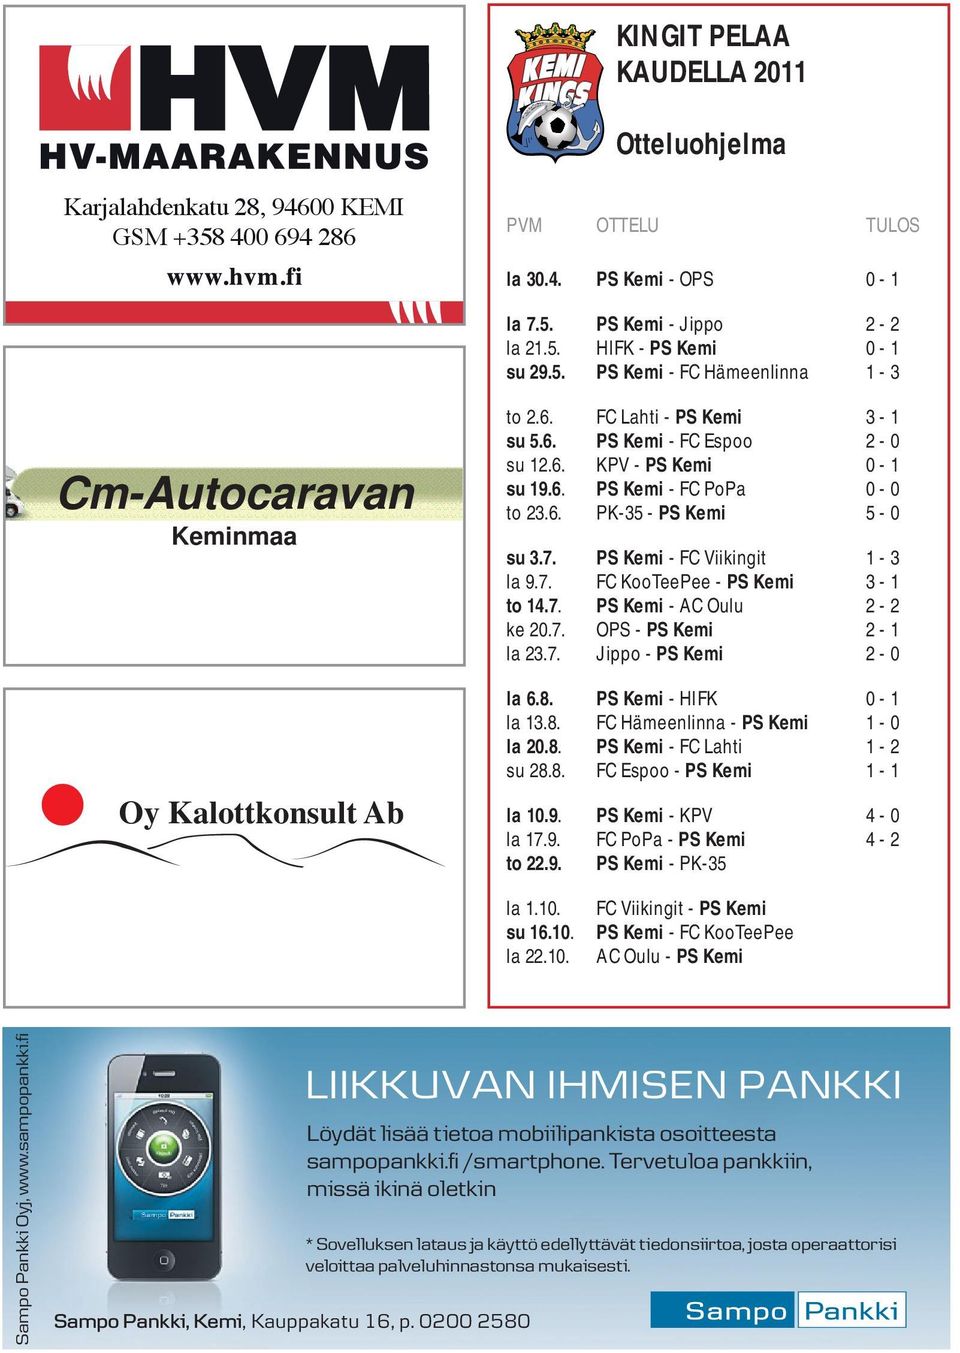 7. PS Kemi - AC Oulu 2-2 ke 20.7. OPS - PS Kemi 2-1 la 23.7. Jippo - PS Kemi 2-0 la 6.8. PS Kemi - HIFK 0-1 la 13.8. FC Hämeenlinna - PS Kemi 1-0 la 20.8. PS Kemi - FC Lahti 1-2 su 28.8. FC Espoo - PS Kemi 1-1 la 10.